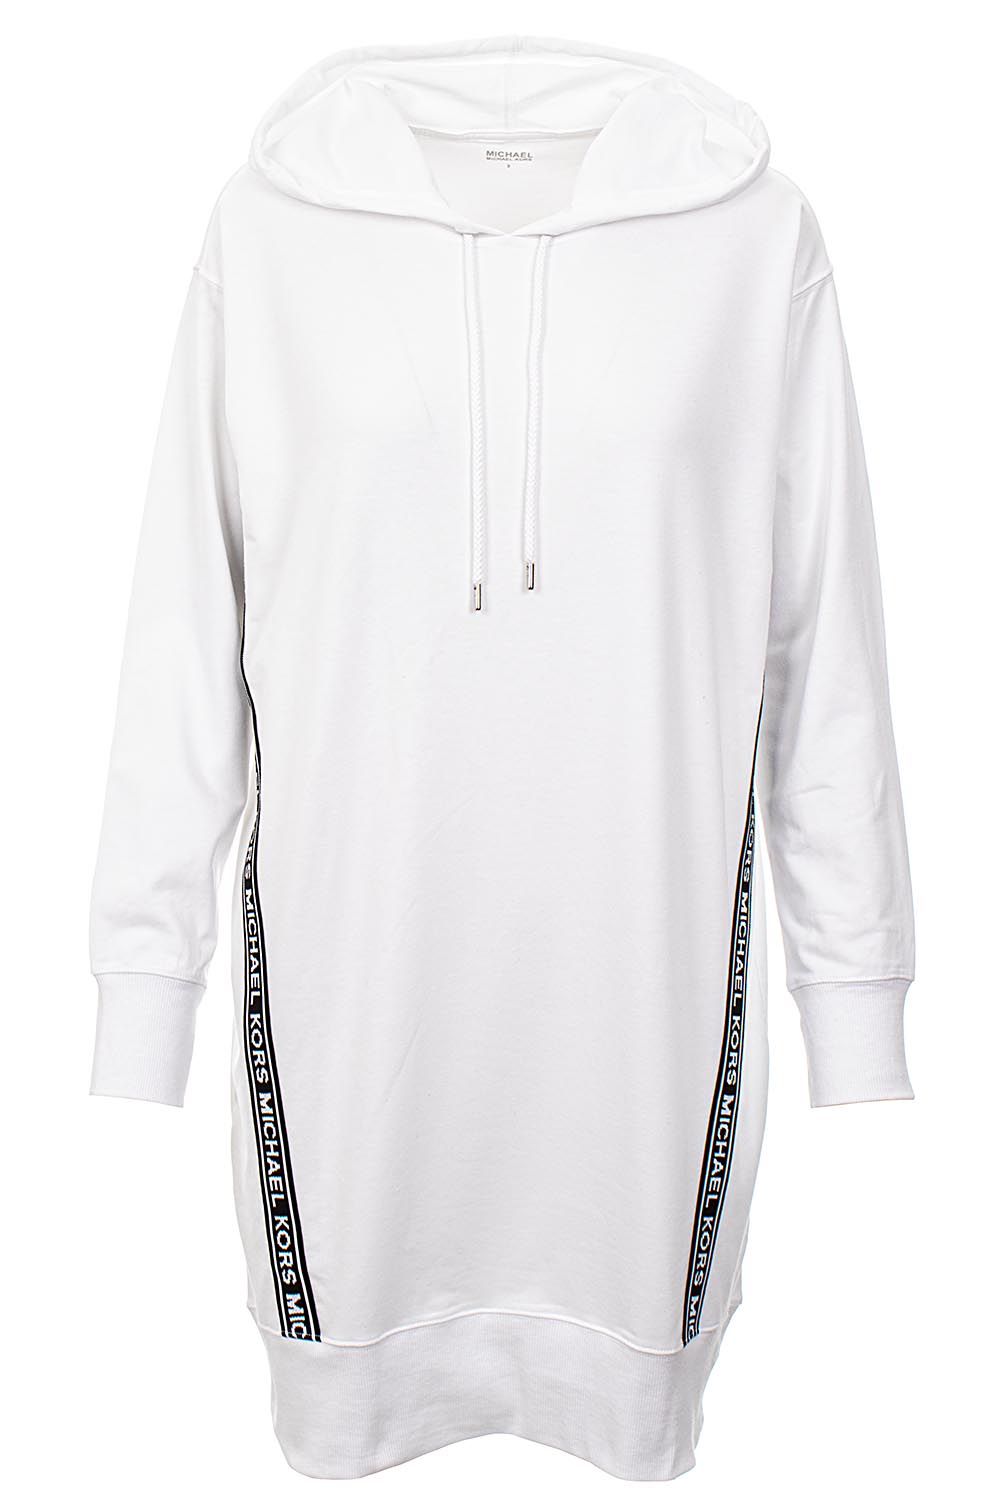 Michael Kors Dámské mikinové šaty s pruhy bílé Velikost: L